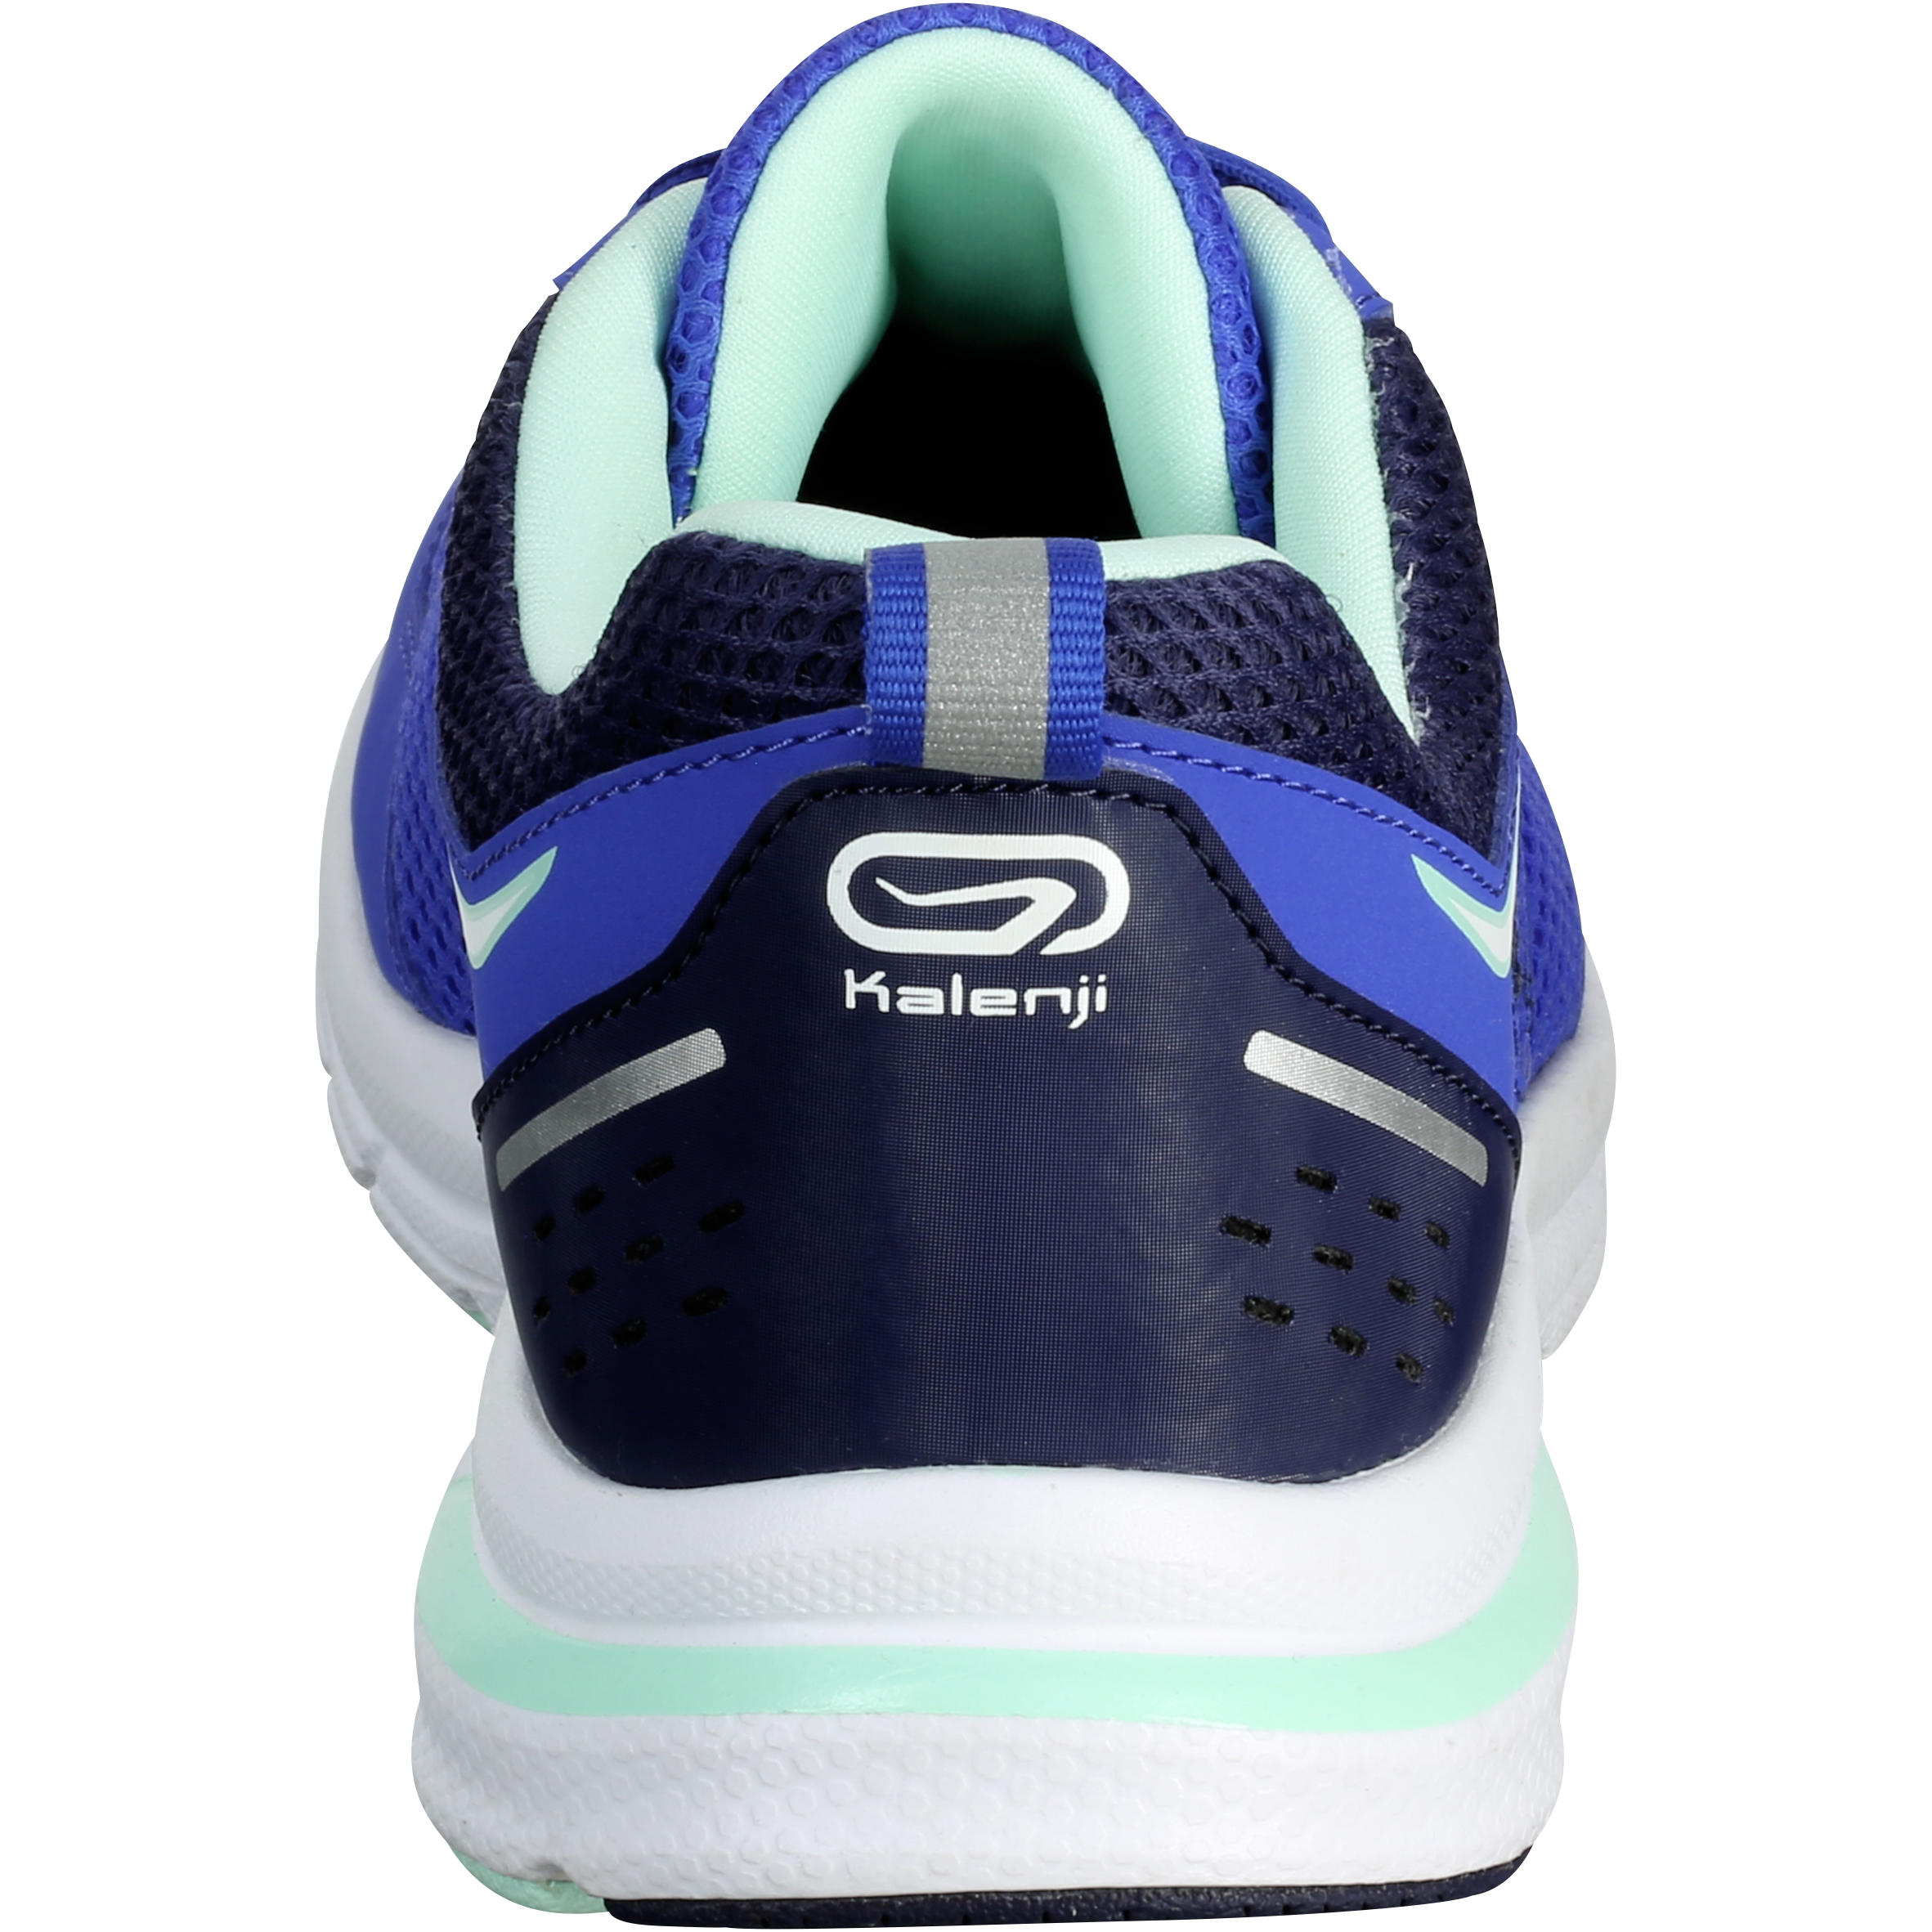 Run Active Women's Running Shoes - Blue 5/6